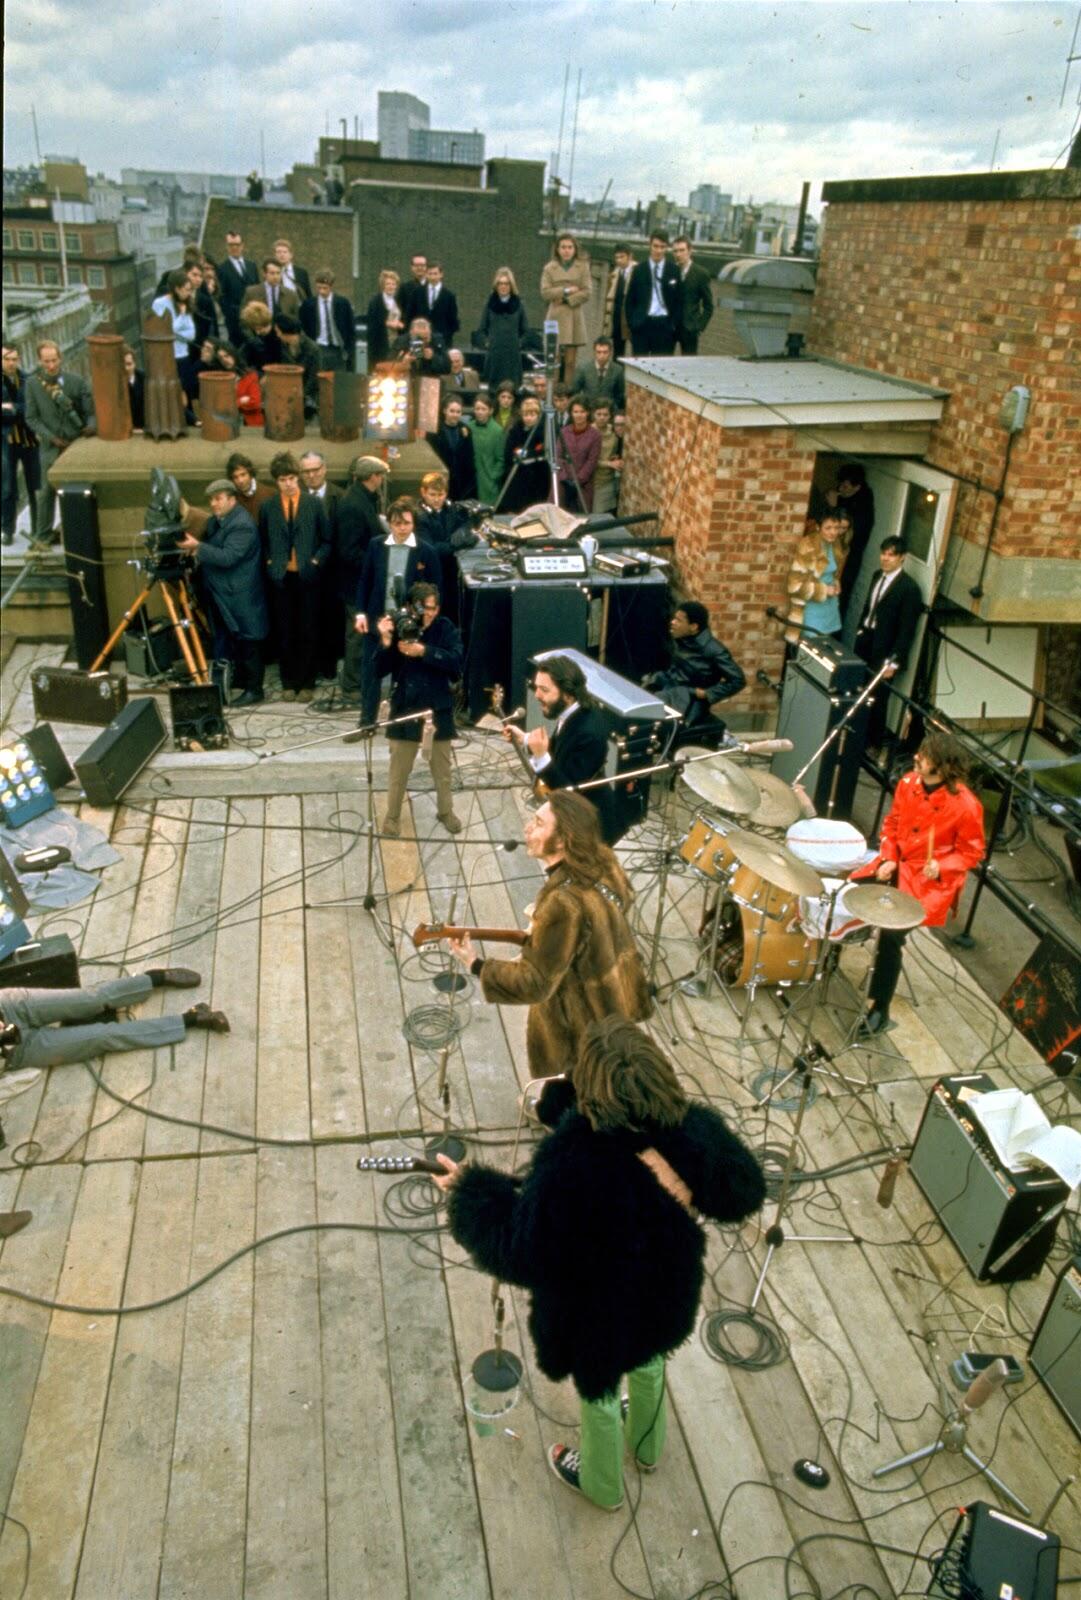 The Beatles' Rooftop Concert in 1969 (3)